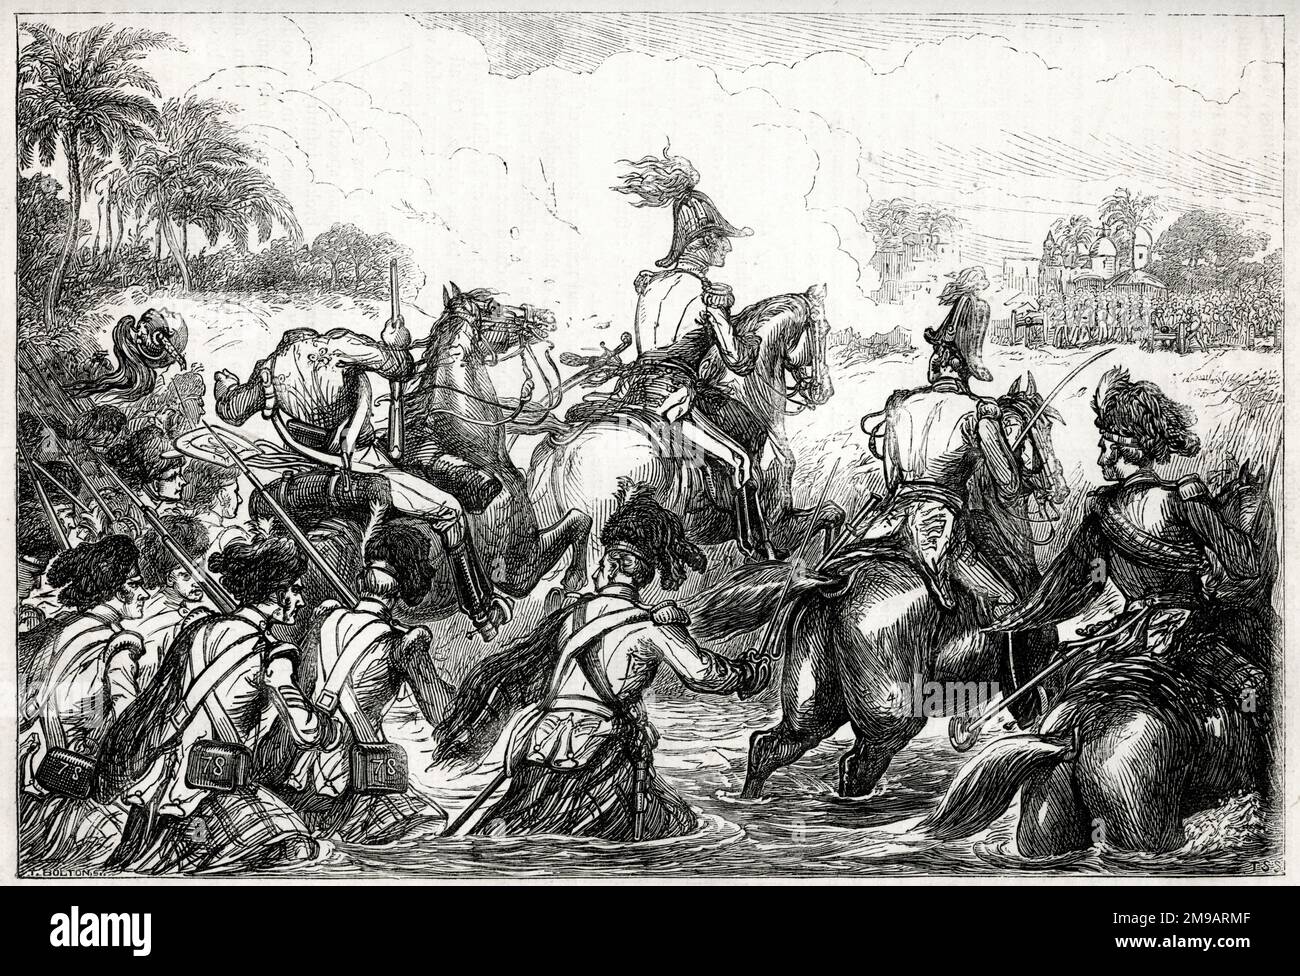 Generale Sir Arthur Wellesley (in seguito Duca di Wellington) Fording the River Kaitna, Battaglia di Assaye, India occidentale, 23 settembre 1803, tra l'Impero Maratha e la Compagnia delle Indie Orientali Britanniche, durante la seconda guerra anglo-maratha (1803-1805). Intorno alle 15:00, gli inglesi attraversarono la riva settentrionale del Kaitna senza oppositori, a parte un lontano incendio molesto del cannone Maratha, che era in gran parte impreciso ma riuscì a decapitare il dragone di Wellesley ordinato come mostrato in questa illustrazione. Foto Stock